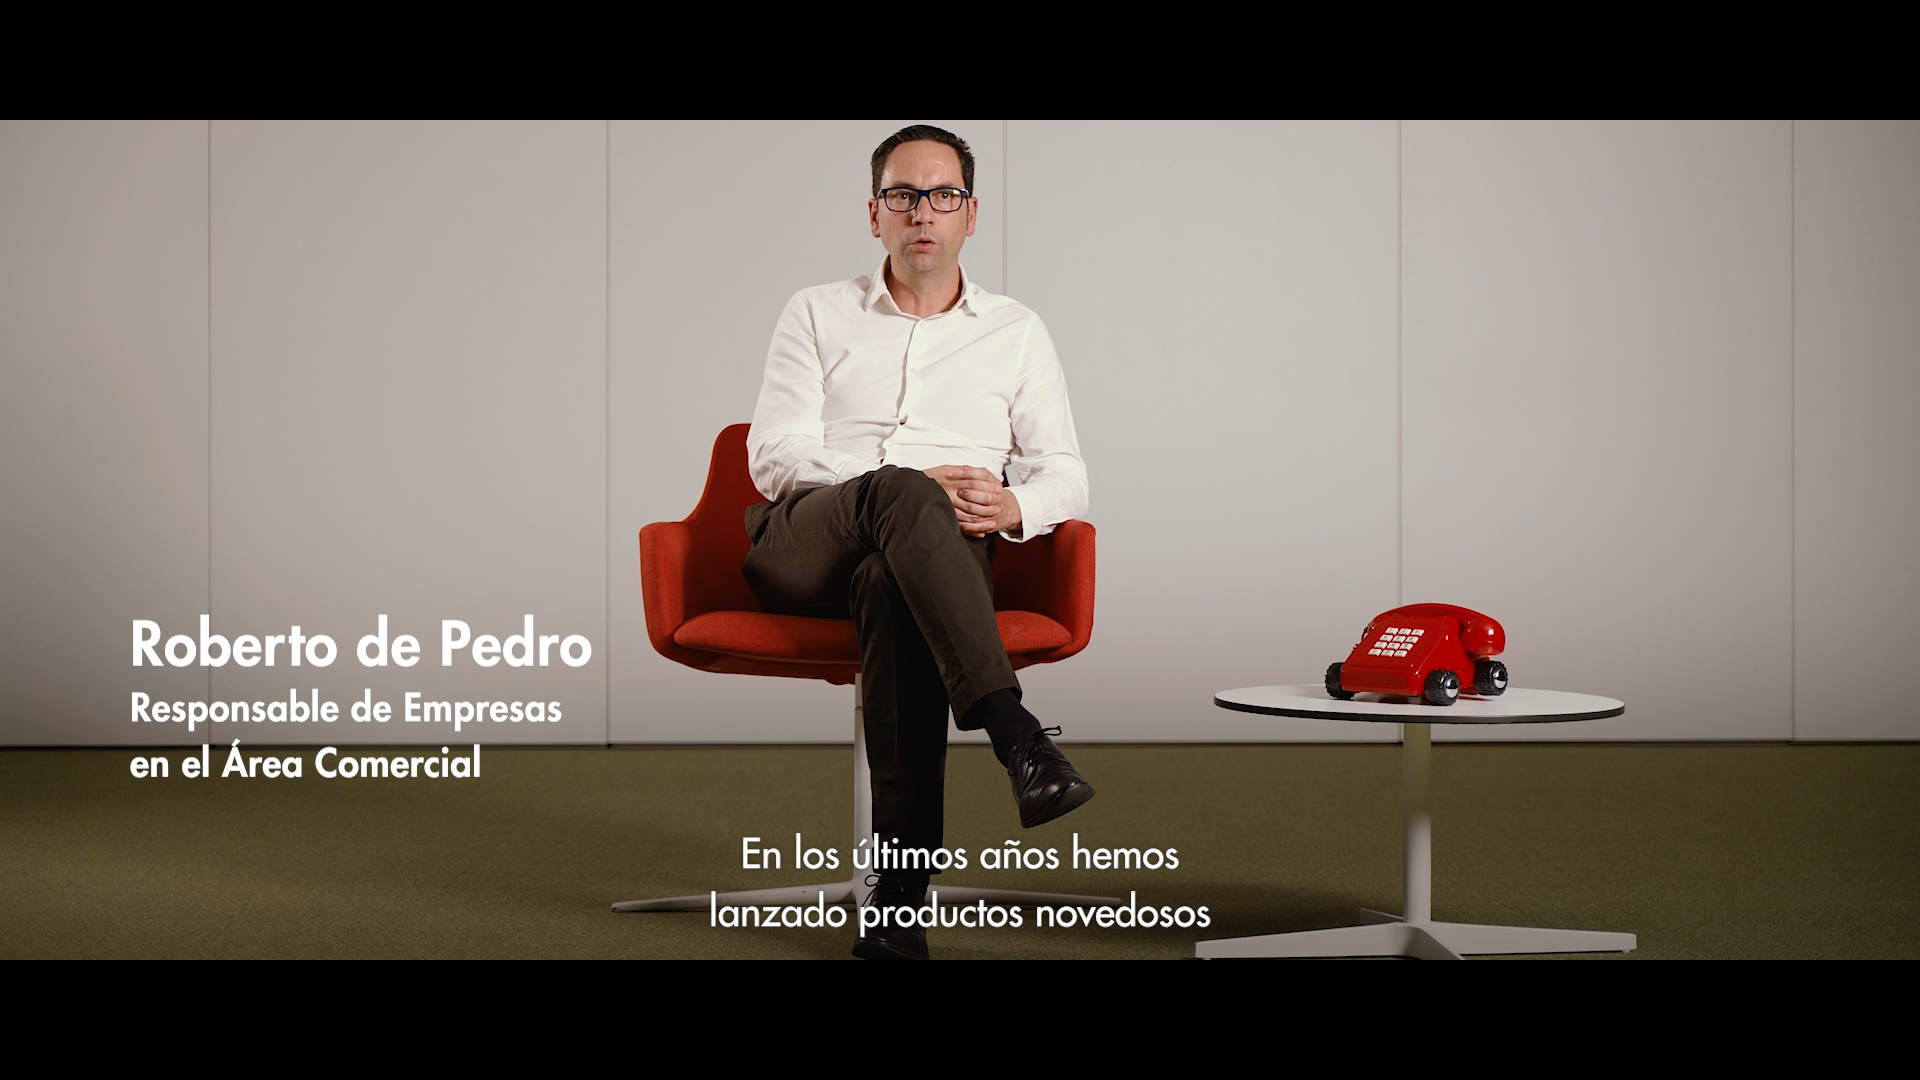 Roberto de Pedro, Responsable de Empresas en el Área Comercial